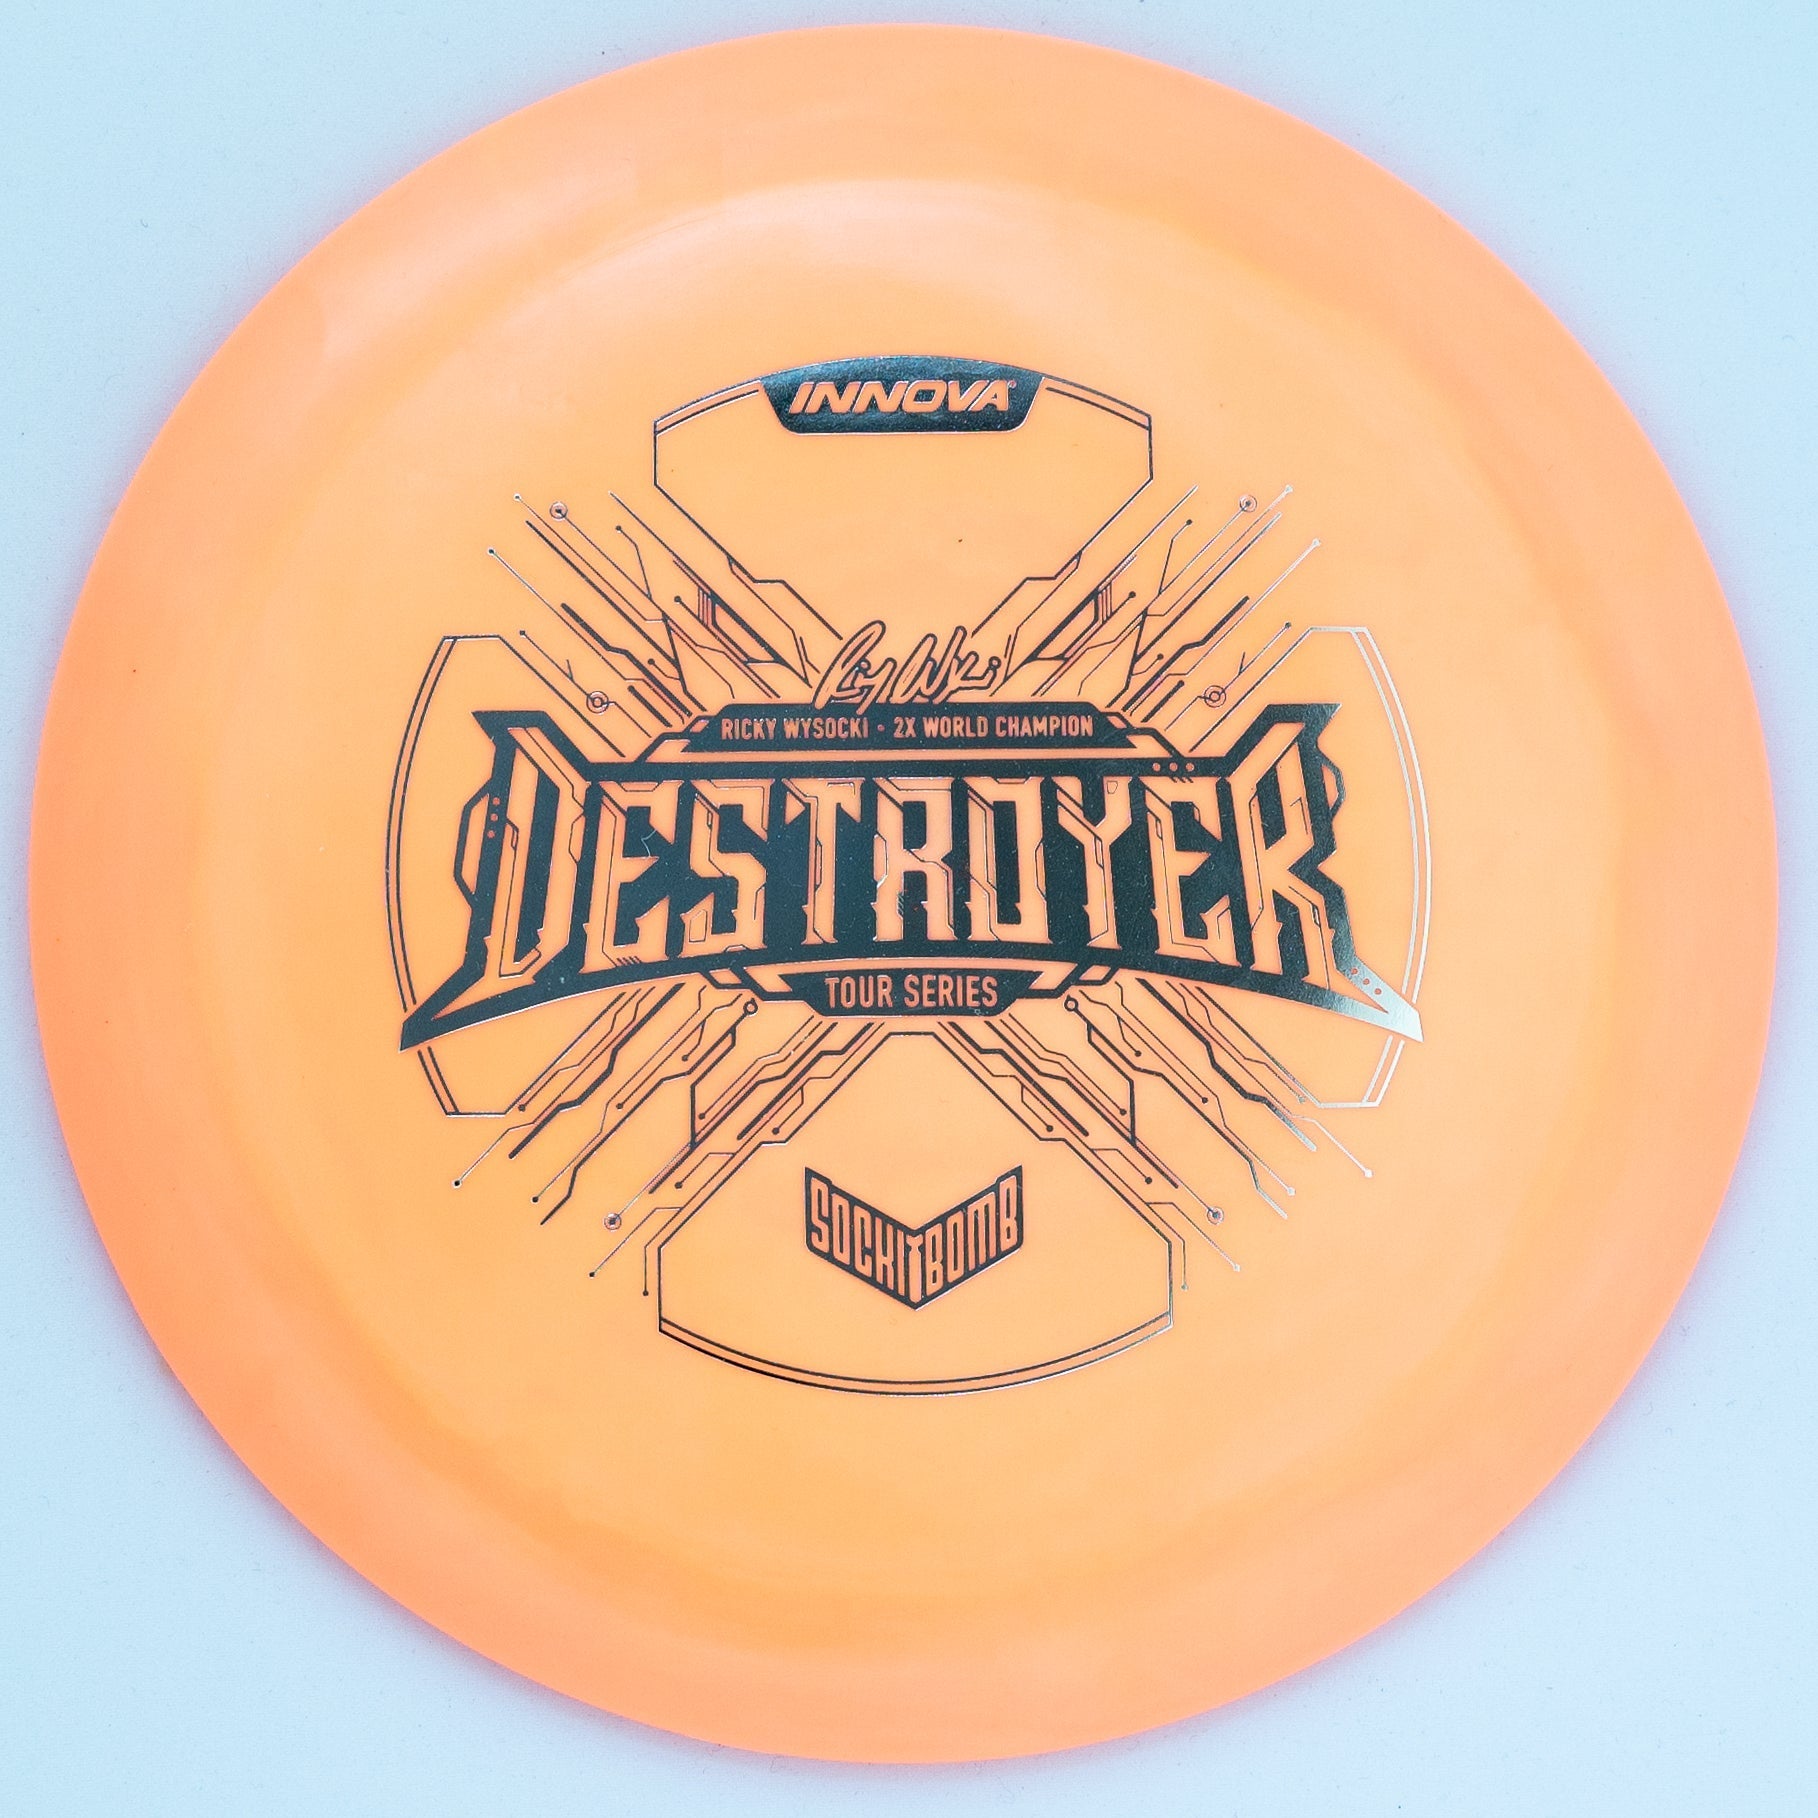 Orange 2021 Ricky Wysocki Tour Series 'SockiBomb' Destroyer disc golf distance driver by Innova Champion Discs.